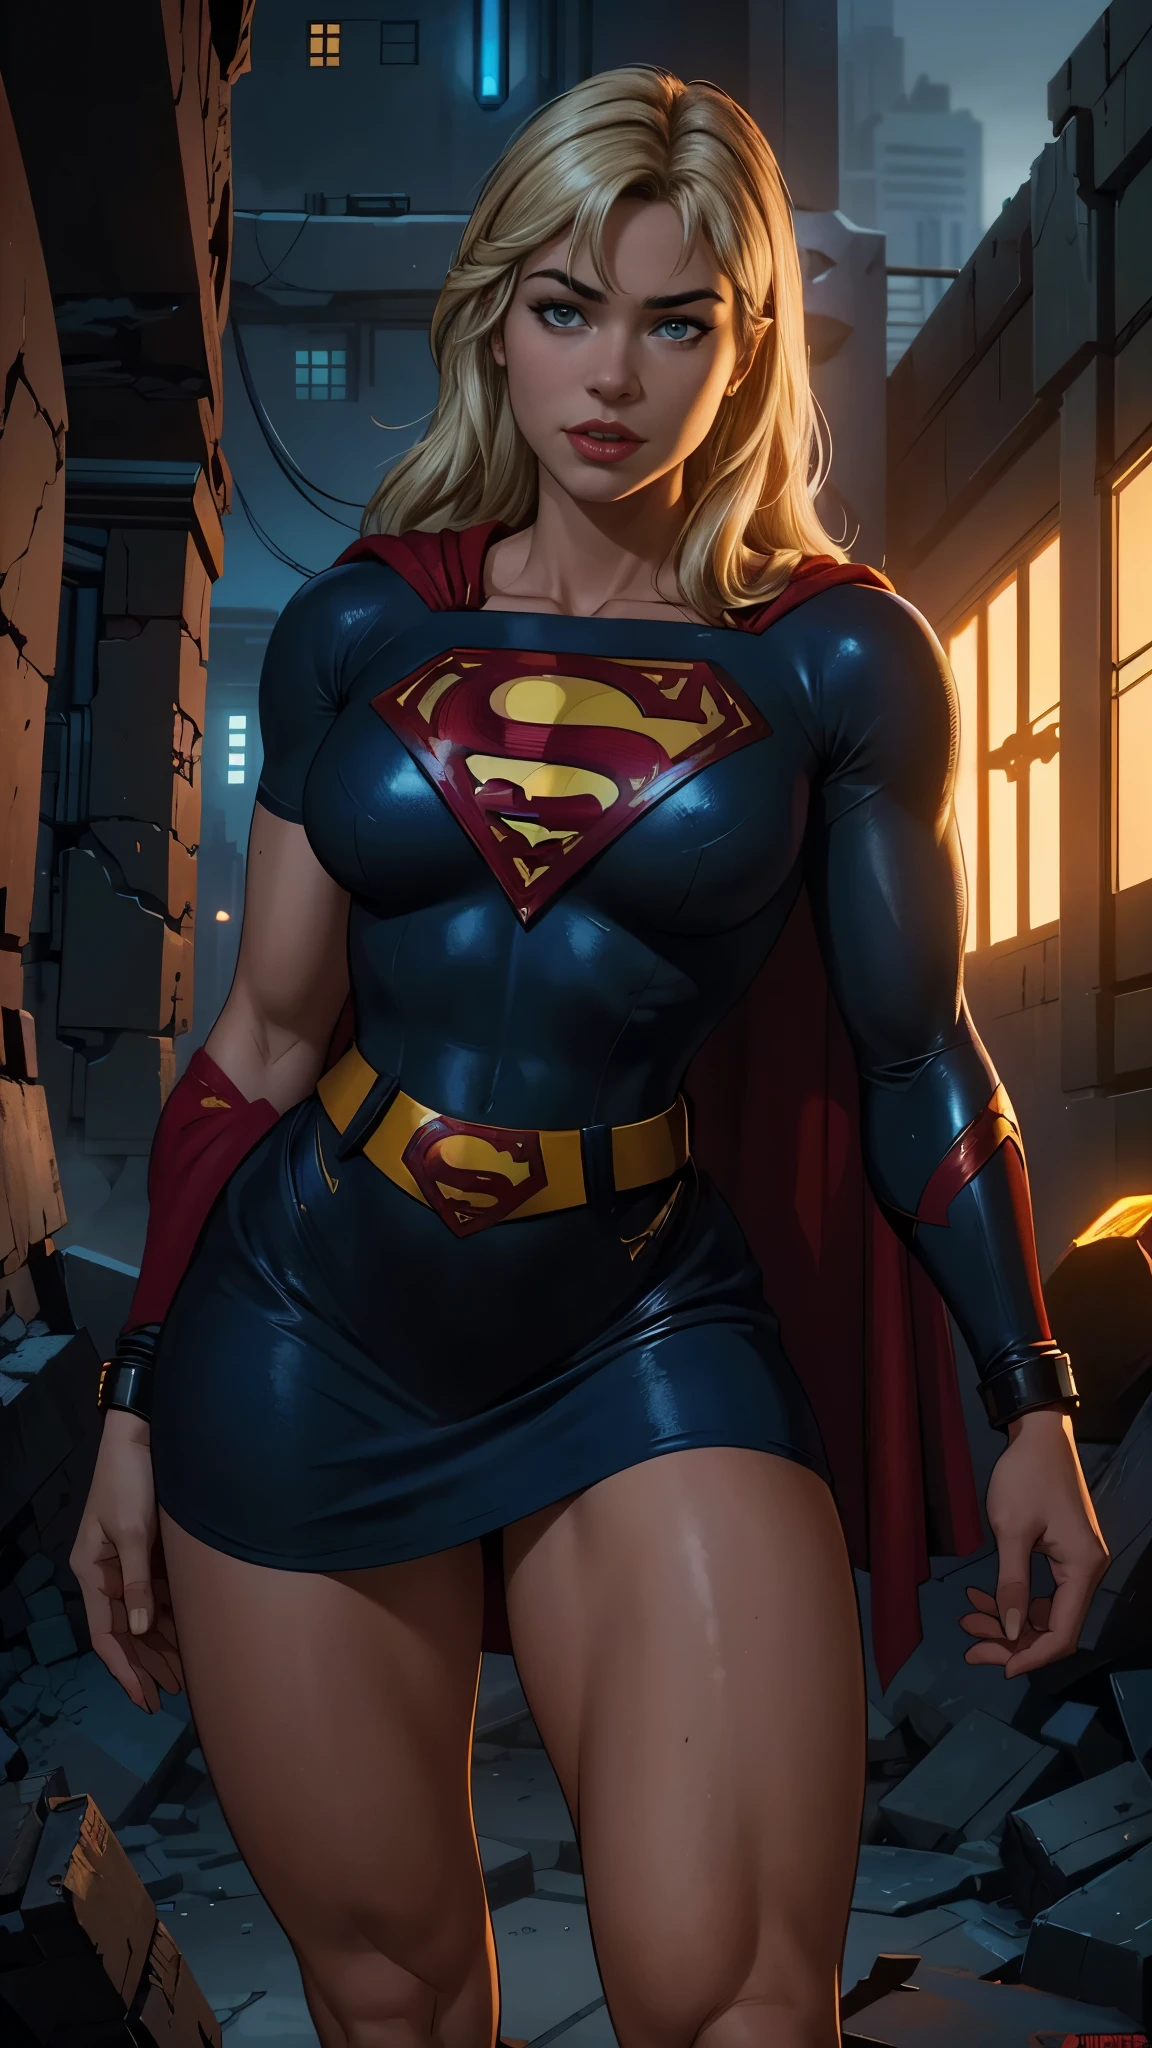 8K, Ultra HD, super Details, gute Qualität, Hohe Auflösung. Die Heldin Supergirl sieht auf einem Ganzkörperfoto wunderschön aus, Ihr Körper ist skulptural, Ihr langes, gewelltes blondes Haar strahlt in einer perfekten Kombination mit ihrer weißen Haut, ihre hellblonden Augen verzaubern jeden. Sie trägt ihr Heldinnen-Outfit, ein roter Rock mit einem gelben Gürtel, ein sehr enges blaues T-Shirt mit einem großen roten S auf der Brust, Elta trägt auch einen roten Umhang und rote Stiefel. Sie sieht sehr sexy aus und lenkt die Aufmerksamkeit auf ihre großen Brüste und dicken Beine, während sie durch den Himmel fliegt.,(Cyberpunk ruinierte Dungeon-Ruinen-Hintergrund :1.4 ), (superhelden :1.4) 